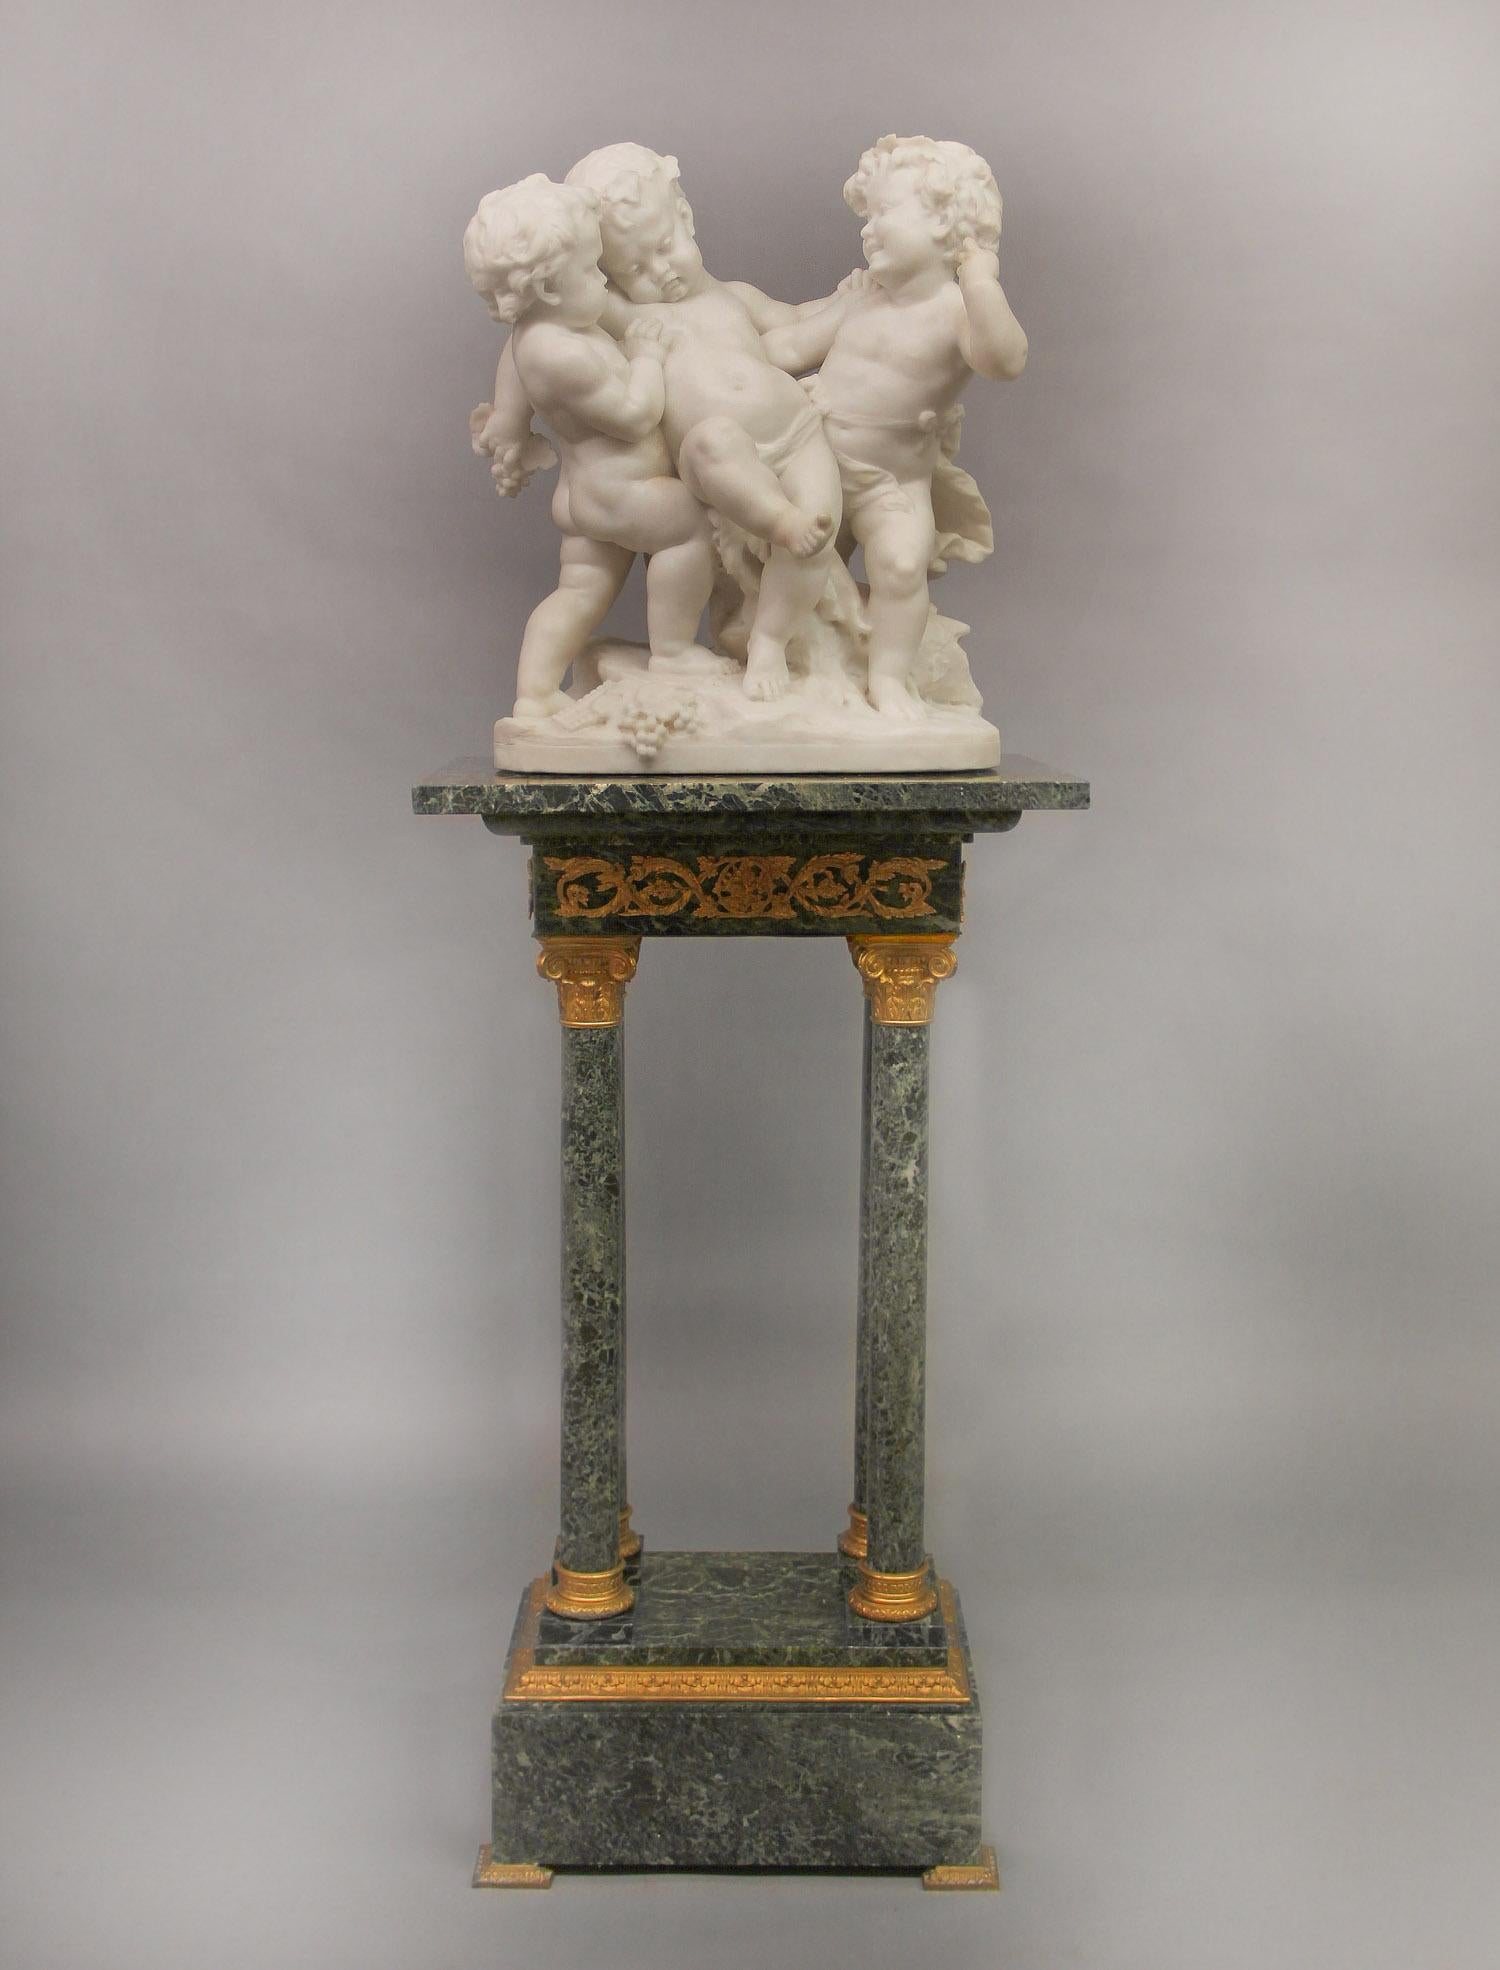 Schöne Figurengruppe aus Carrara-Marmor des späten 19. Jahrhunderts: Der betrunkene Silenus von Rougelet

Darstellung von drei Putten, die Silenus in die Höhe halten, umgeben von Weintrauben.

Auf dem Sockel mit Rougelet beschriftet.

Bénédict